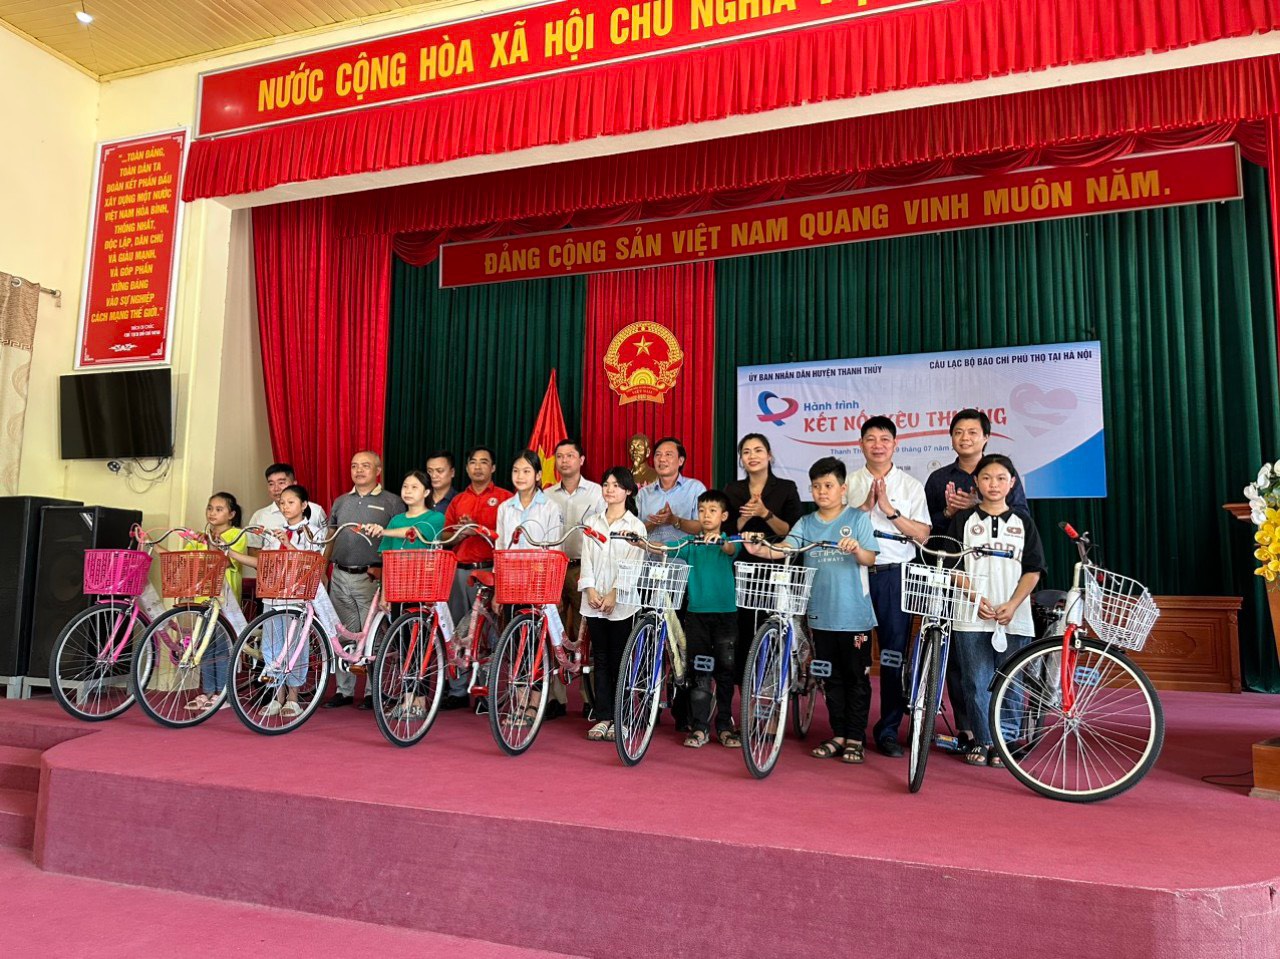 CLB Báo chí Phú Thọ tại Hà Nội chung tay, giúp đỡ quê hương